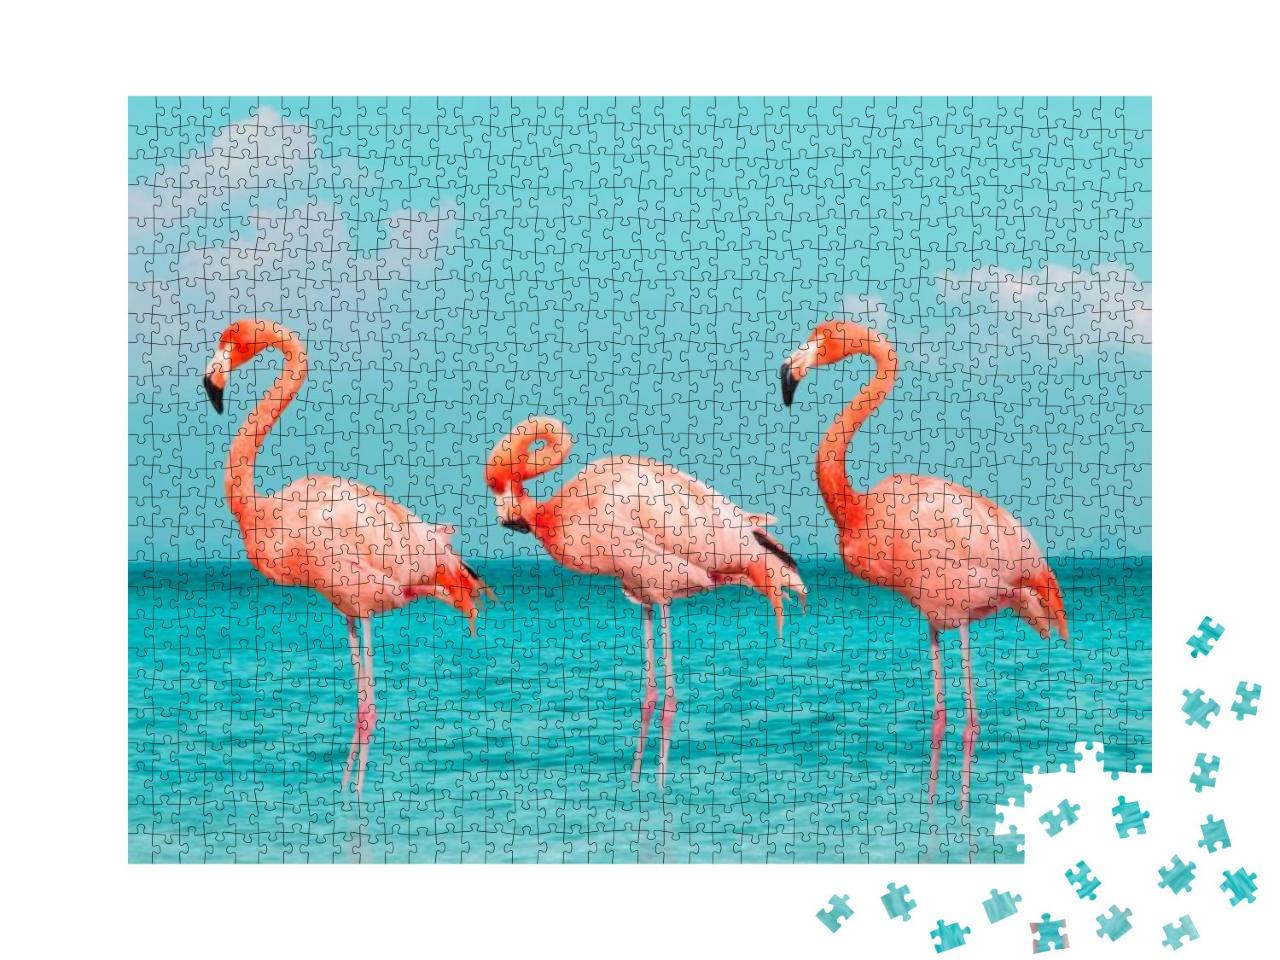 Puzzle 1000 Teile „Flamingos im blauen Meer“